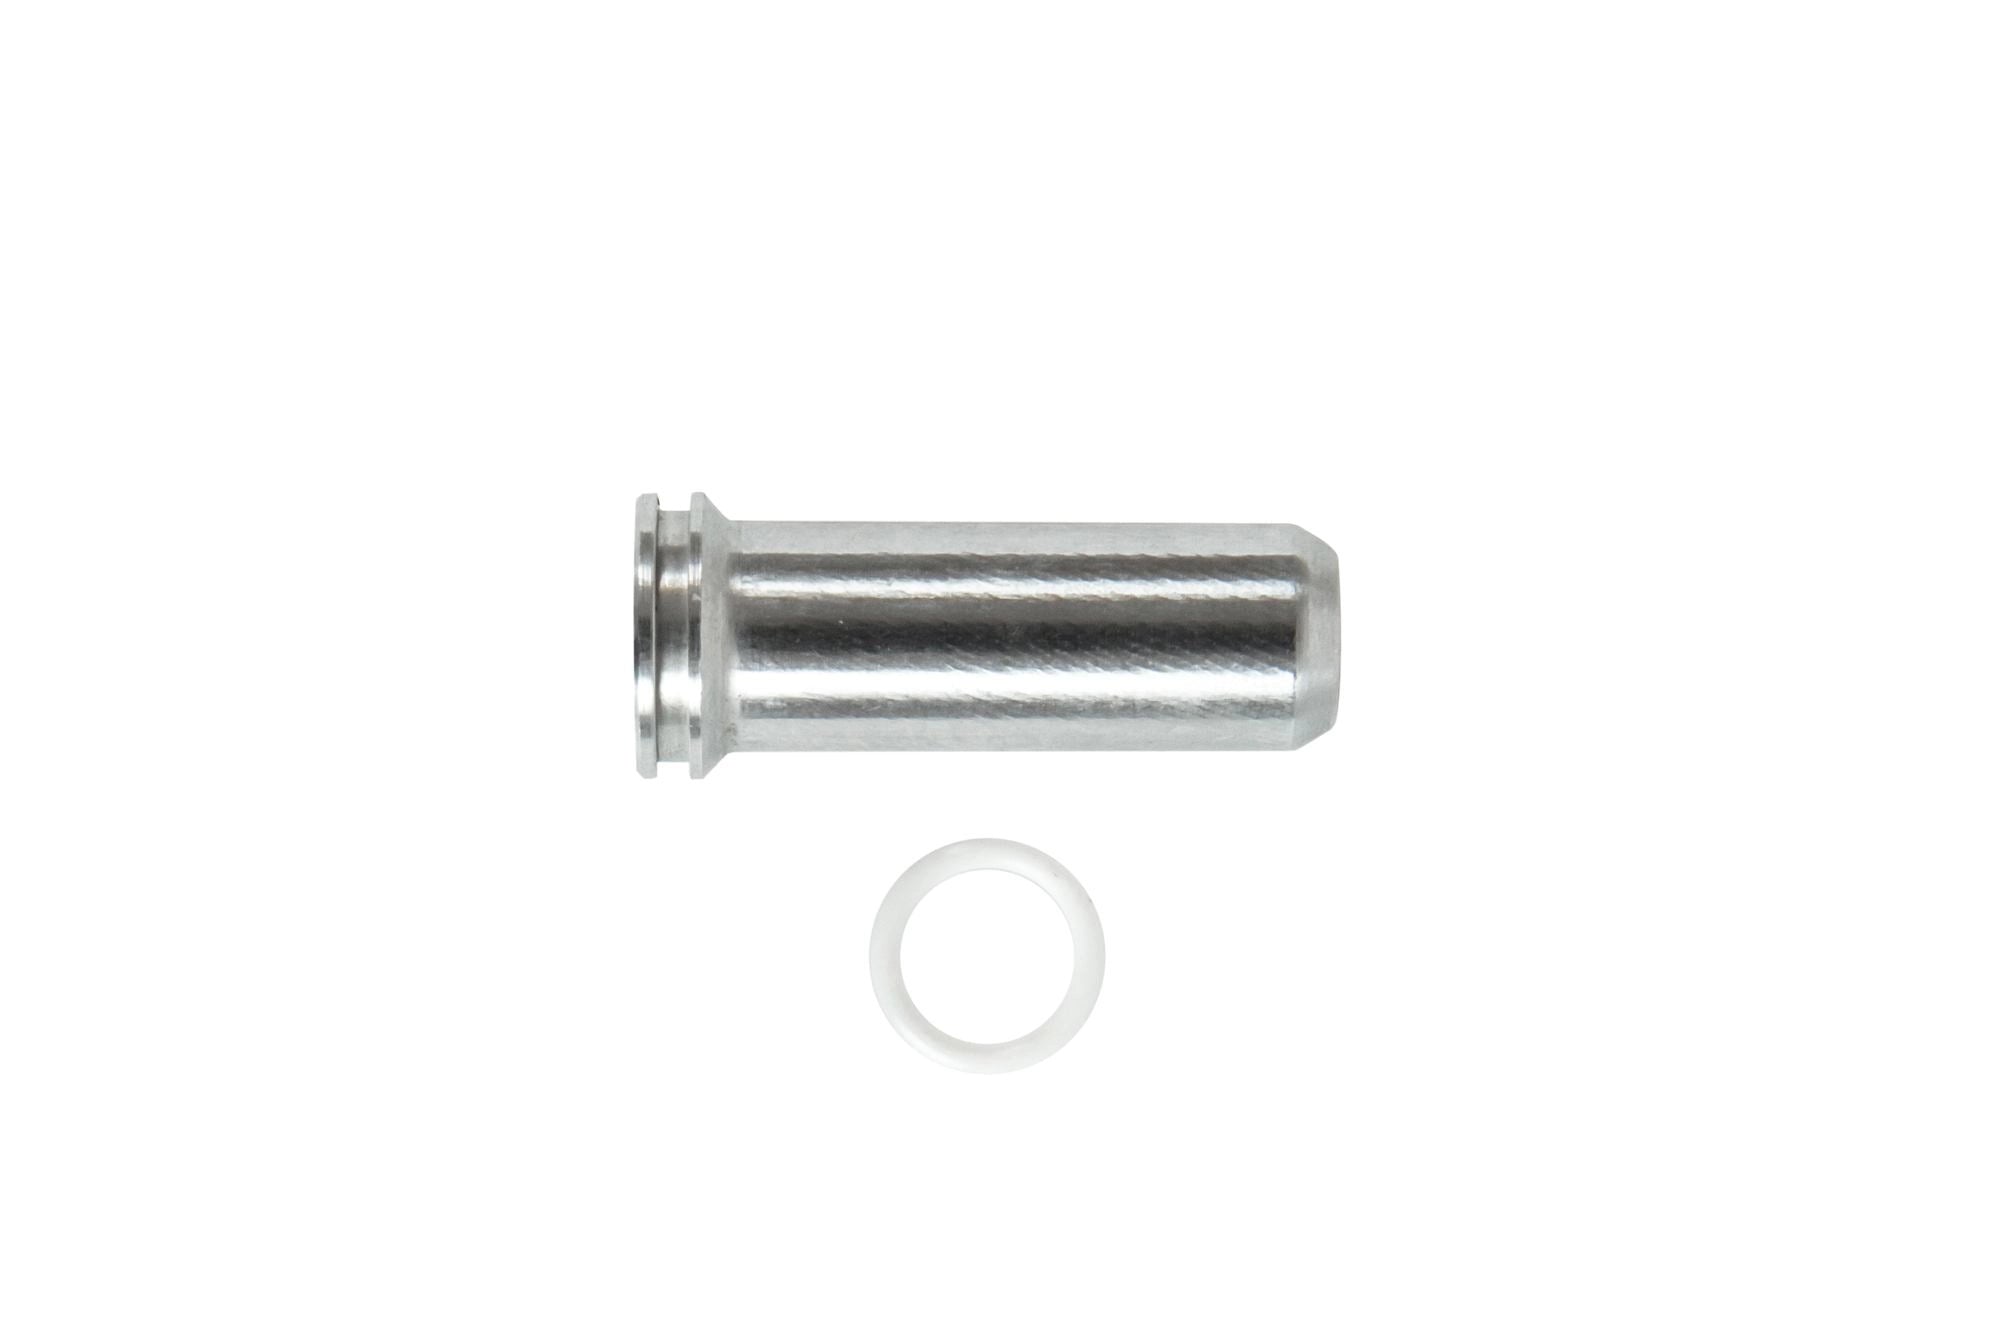 Aluminum CNC Nozzle - 35.2 mm